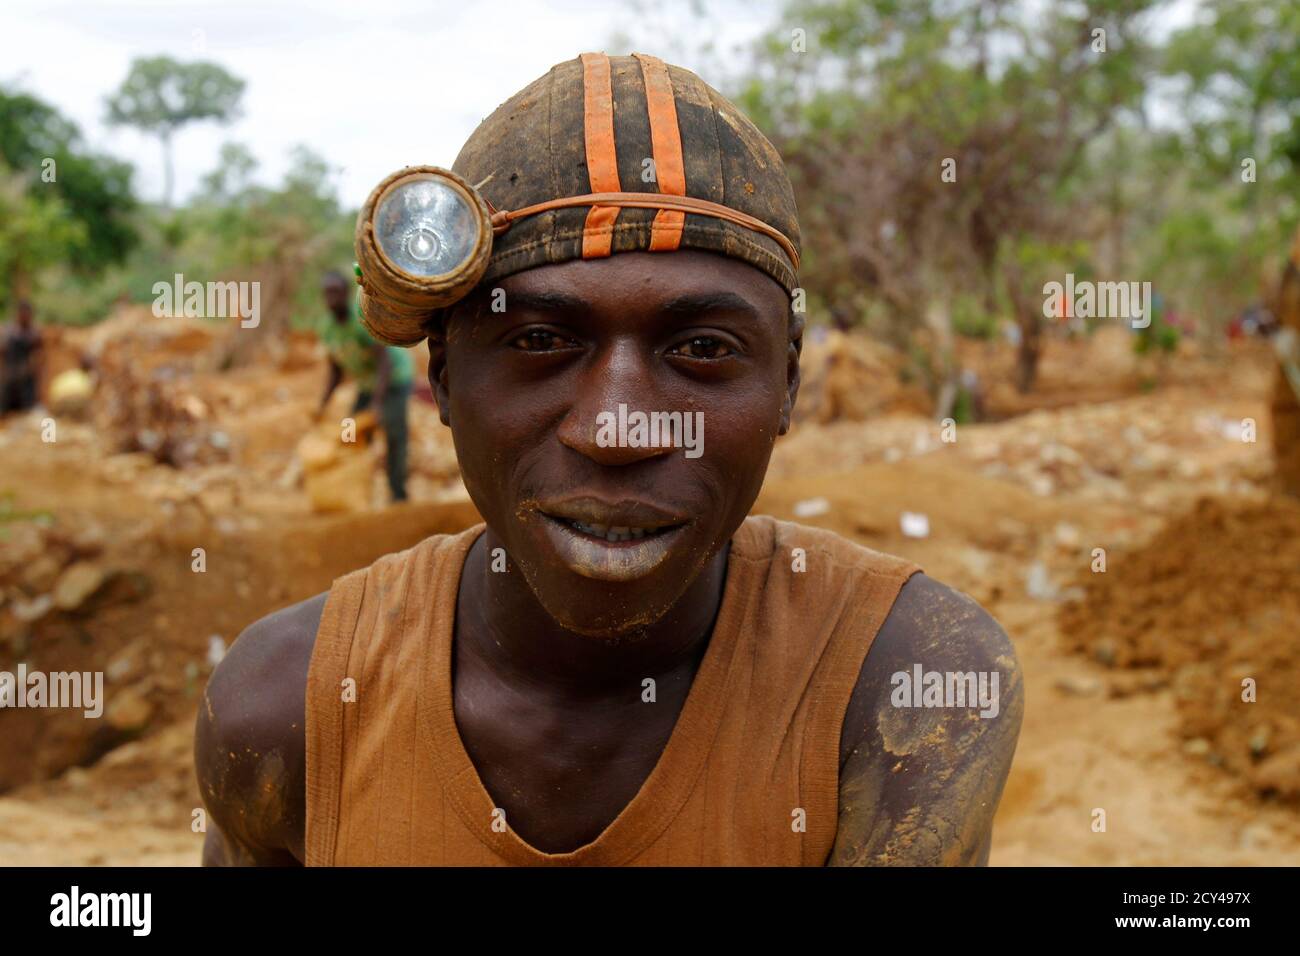 Ghana gold mine -Fotos und -Bildmaterial in hoher Auflösung - Seite 2 -  Alamy